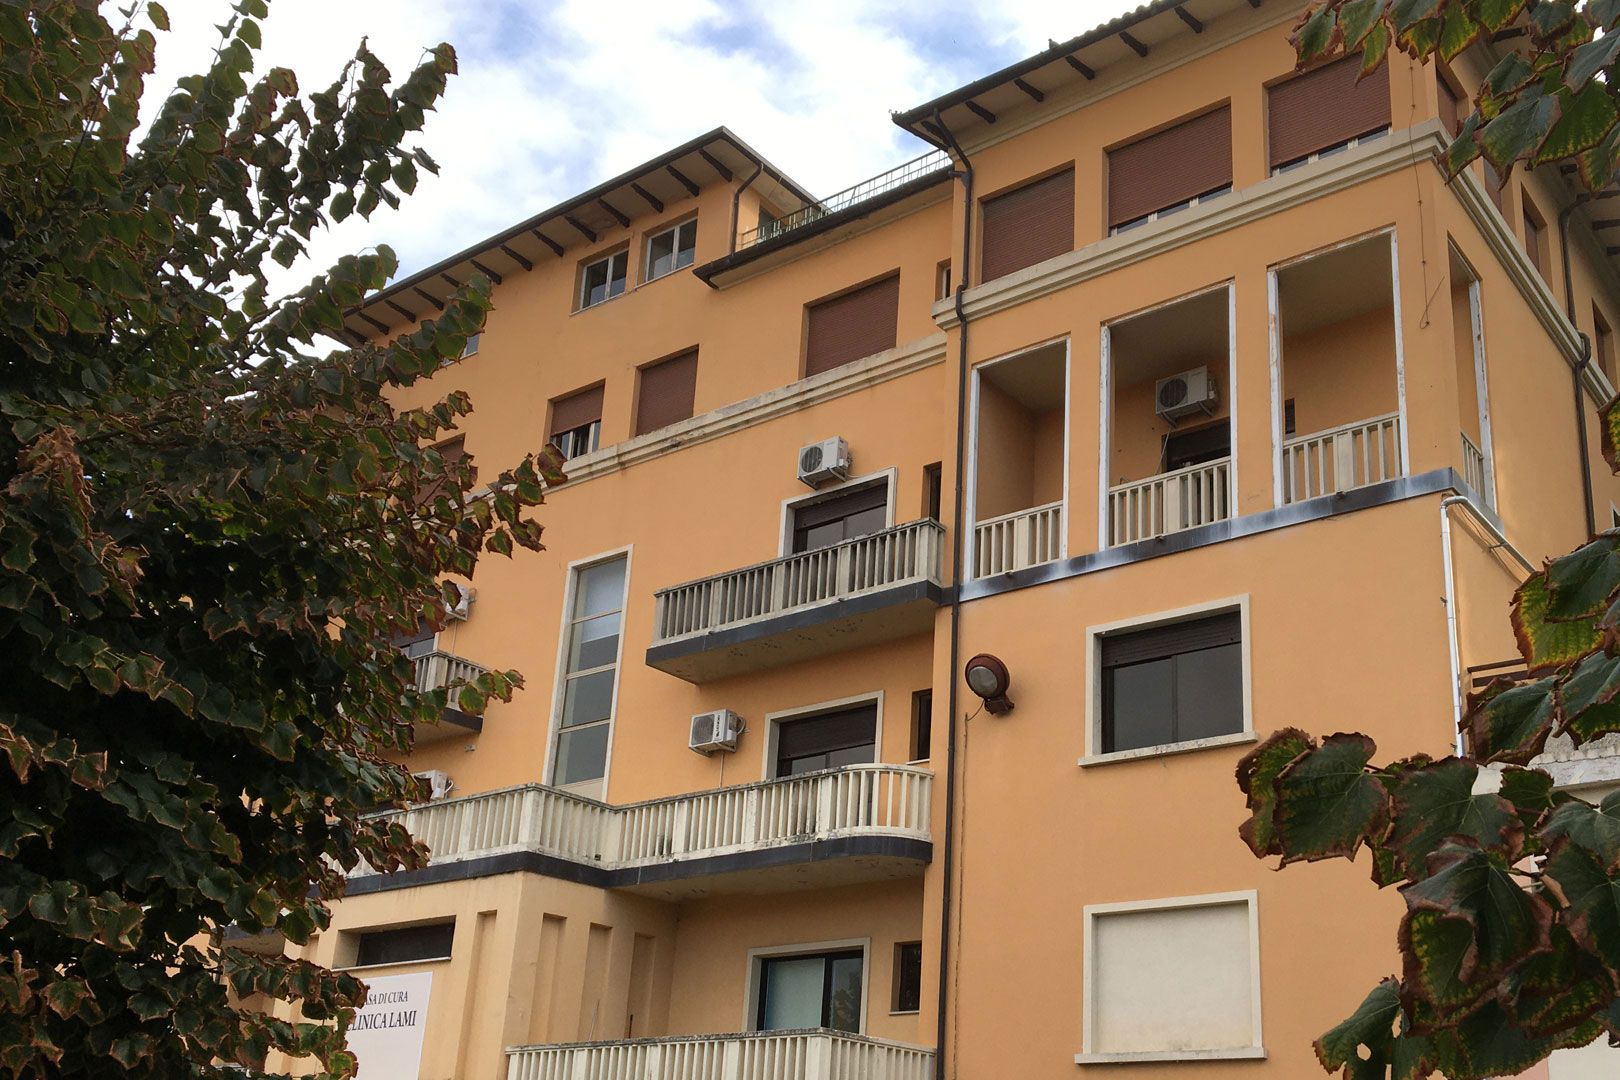 Scopri Clinica Lami struttura mendica in Umbria